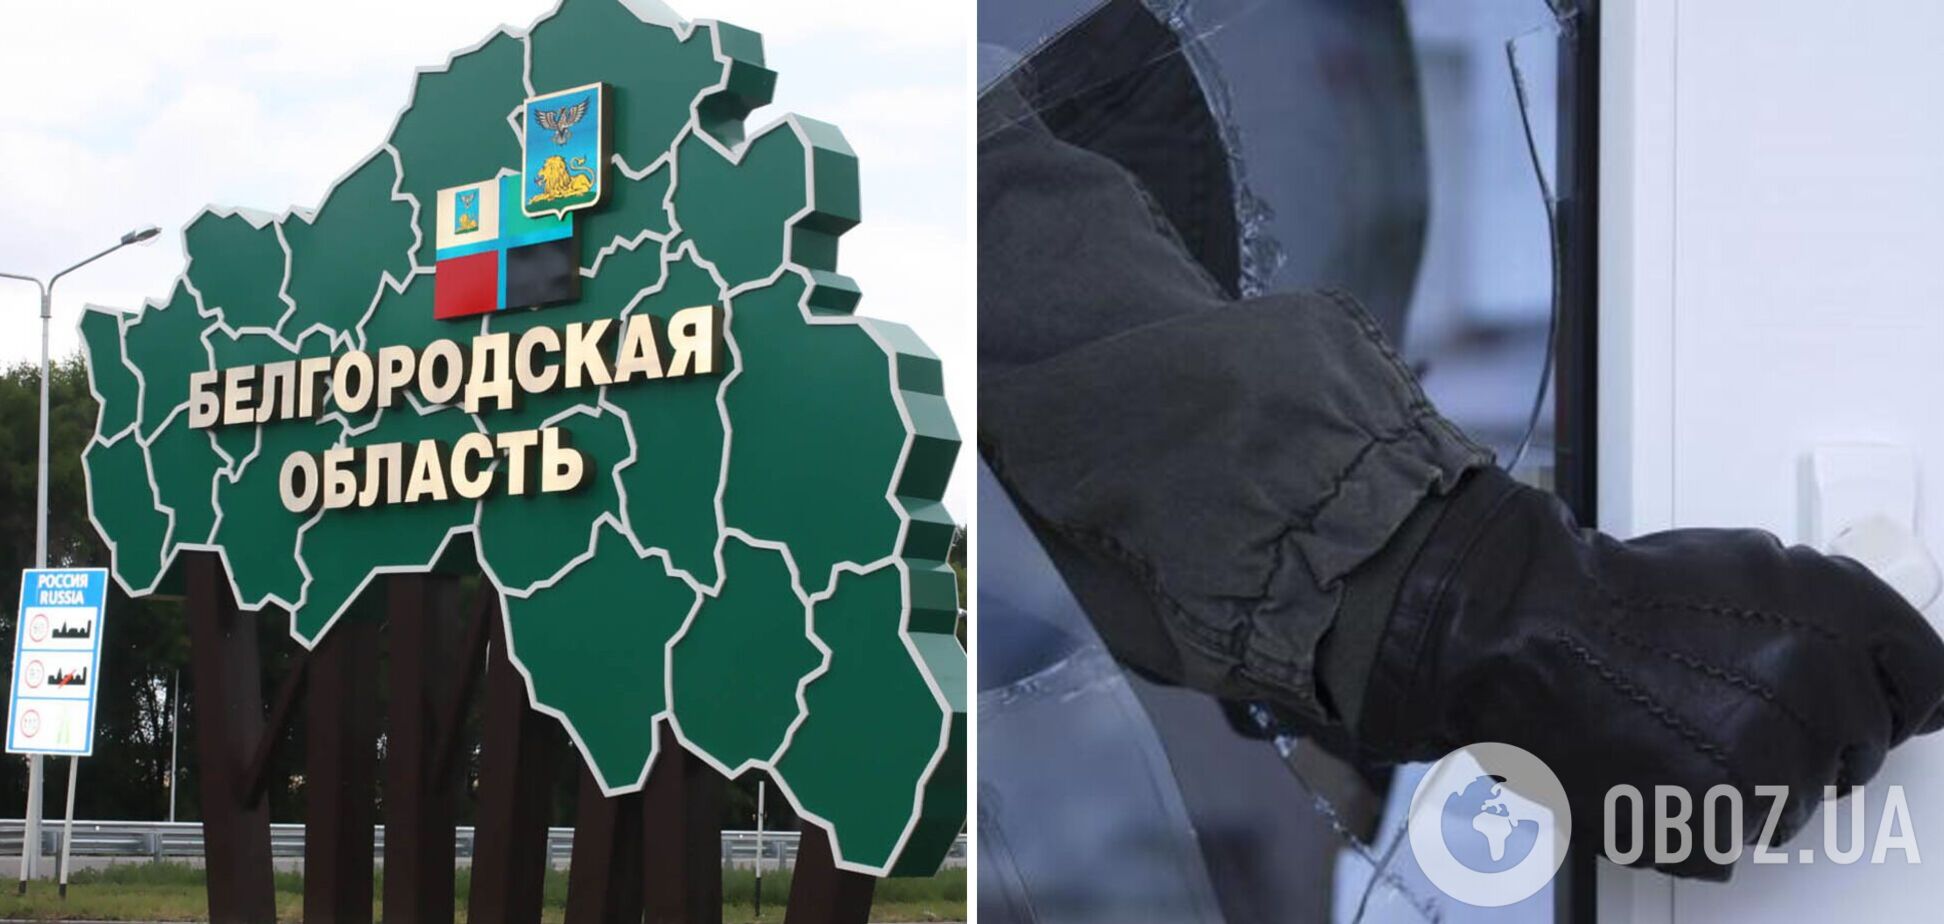 У Бєлгородській області почастішали випадки крадіжок